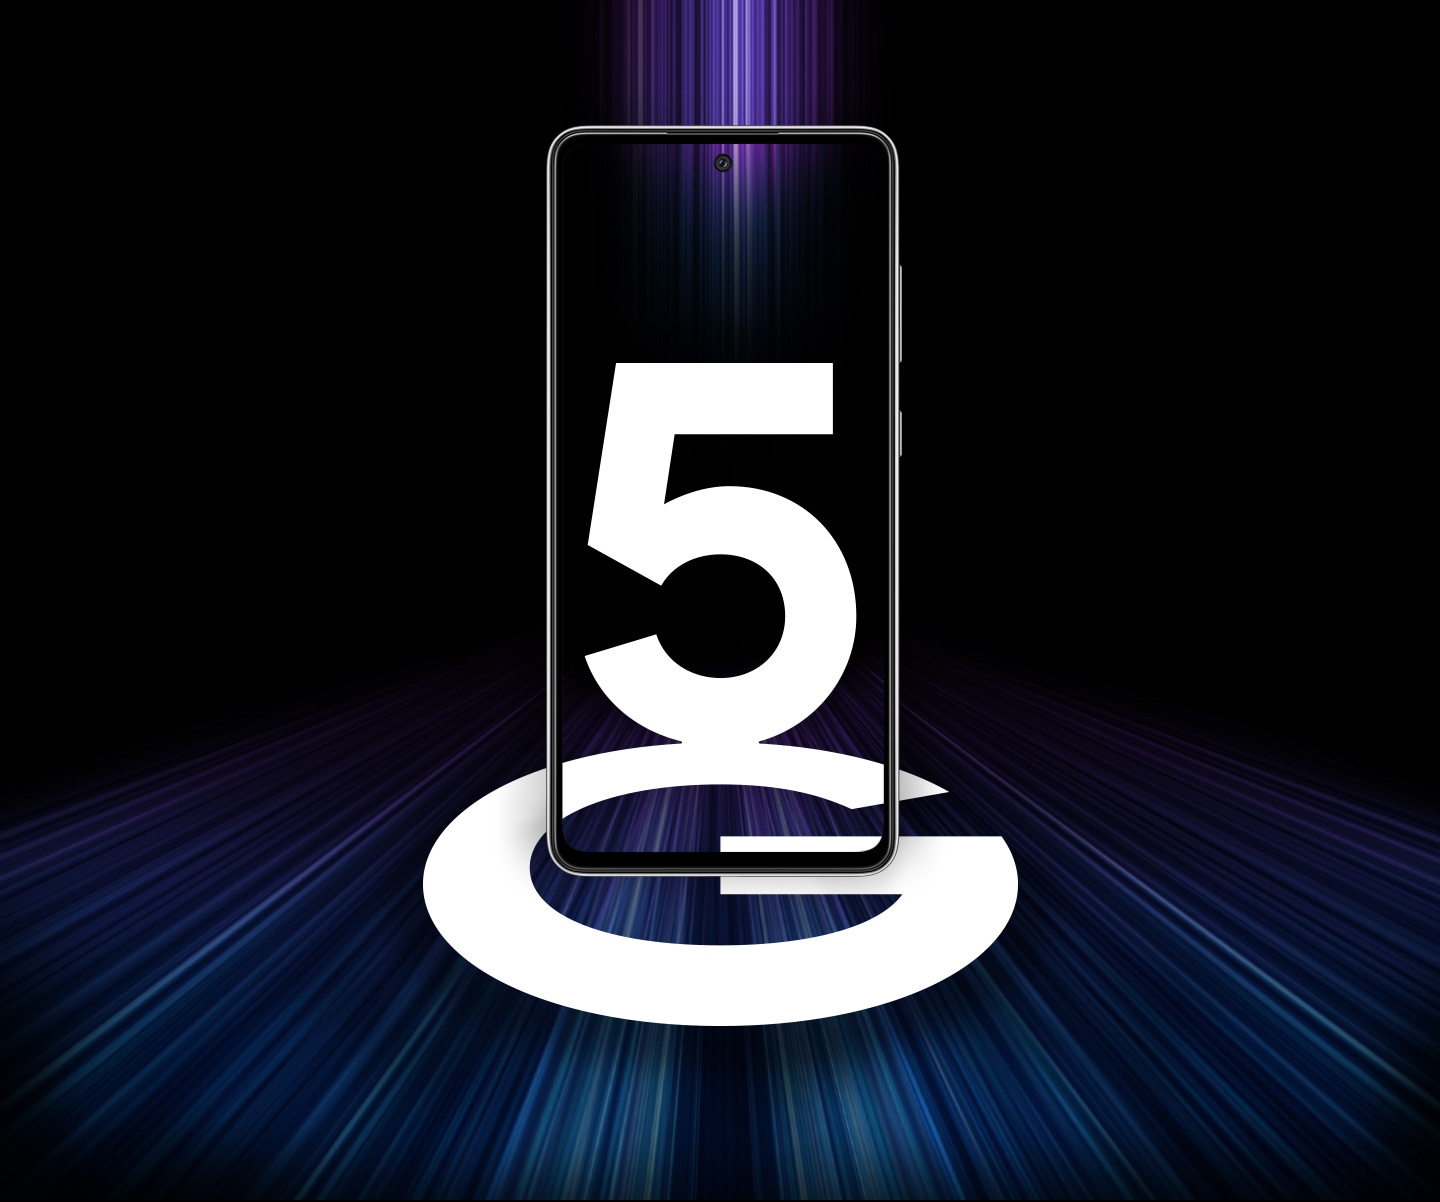 Vista frontal do Galaxy A52 5G com a palavra 5G no display. Faixas coloridas de luz o cercam para representar velocidades rpidas de 5G.